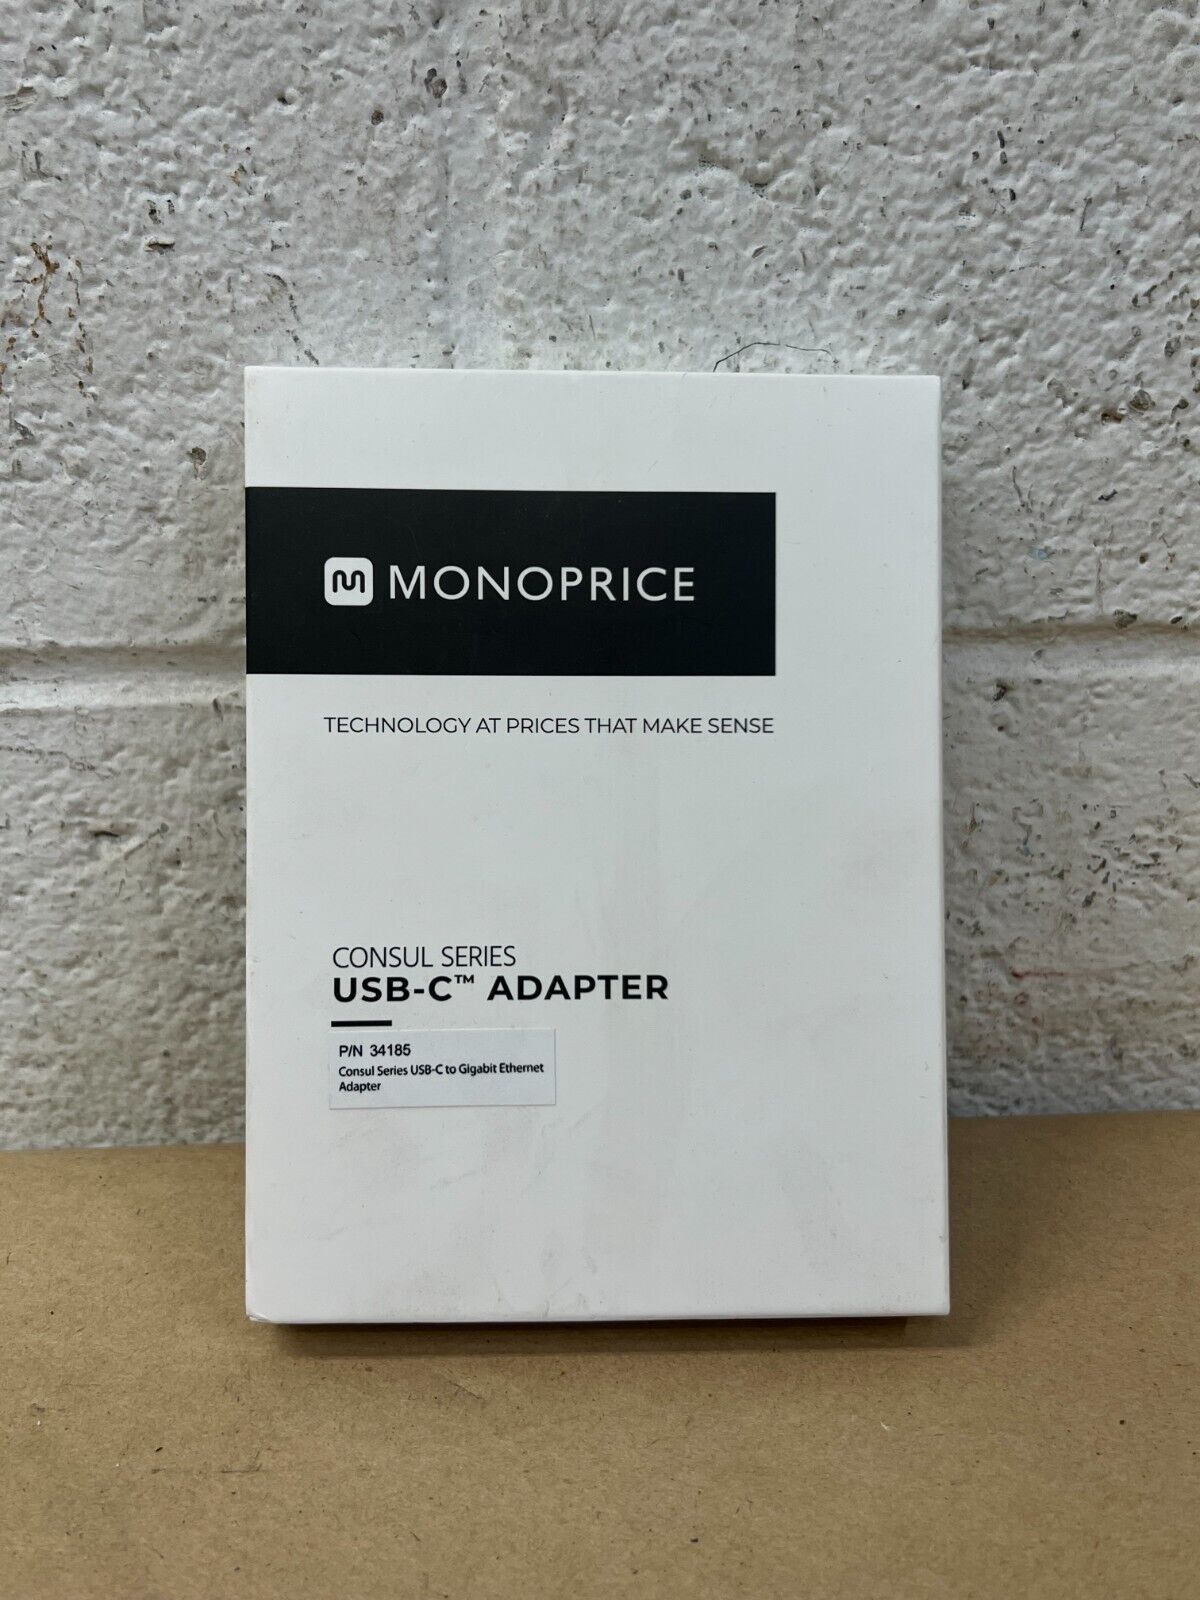 Monoprice Consul Series USB-C Adapter